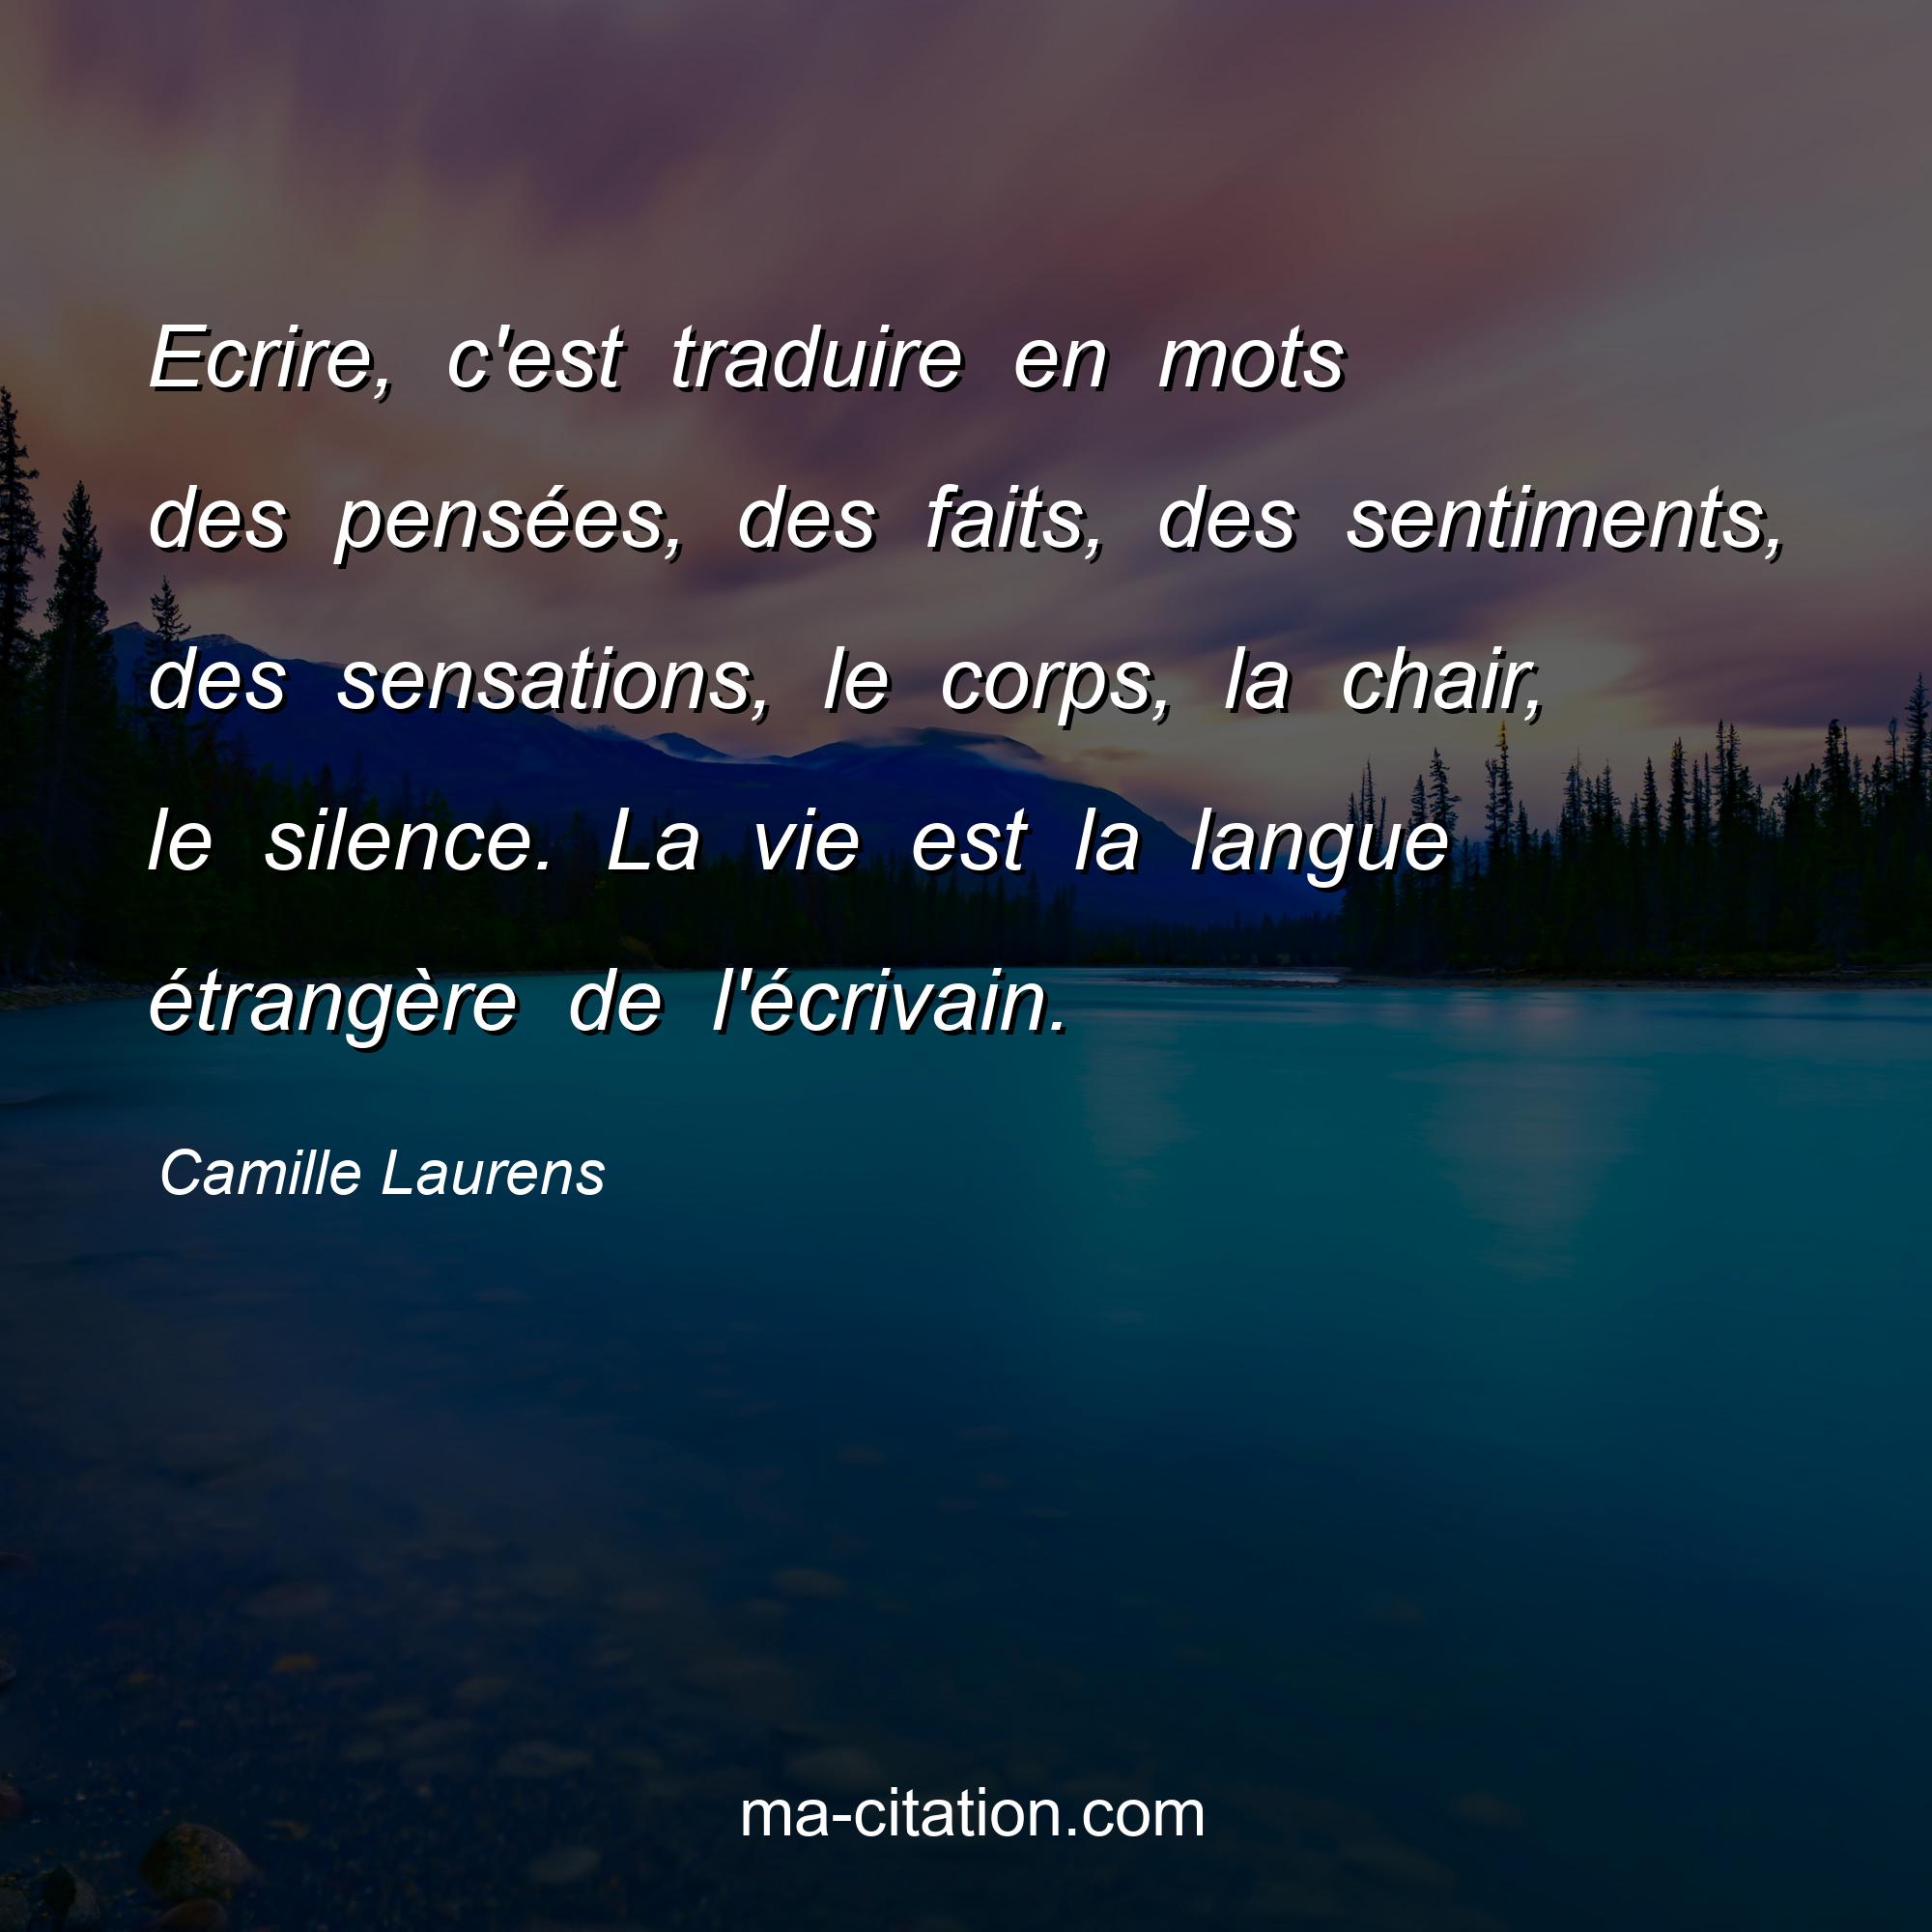 Camille Laurens : Ecrire, c'est traduire en mots des pensées, des faits, des sentiments, des sensations, le corps, la chair, le silence. La vie est la langue étrangère de l'écrivain.